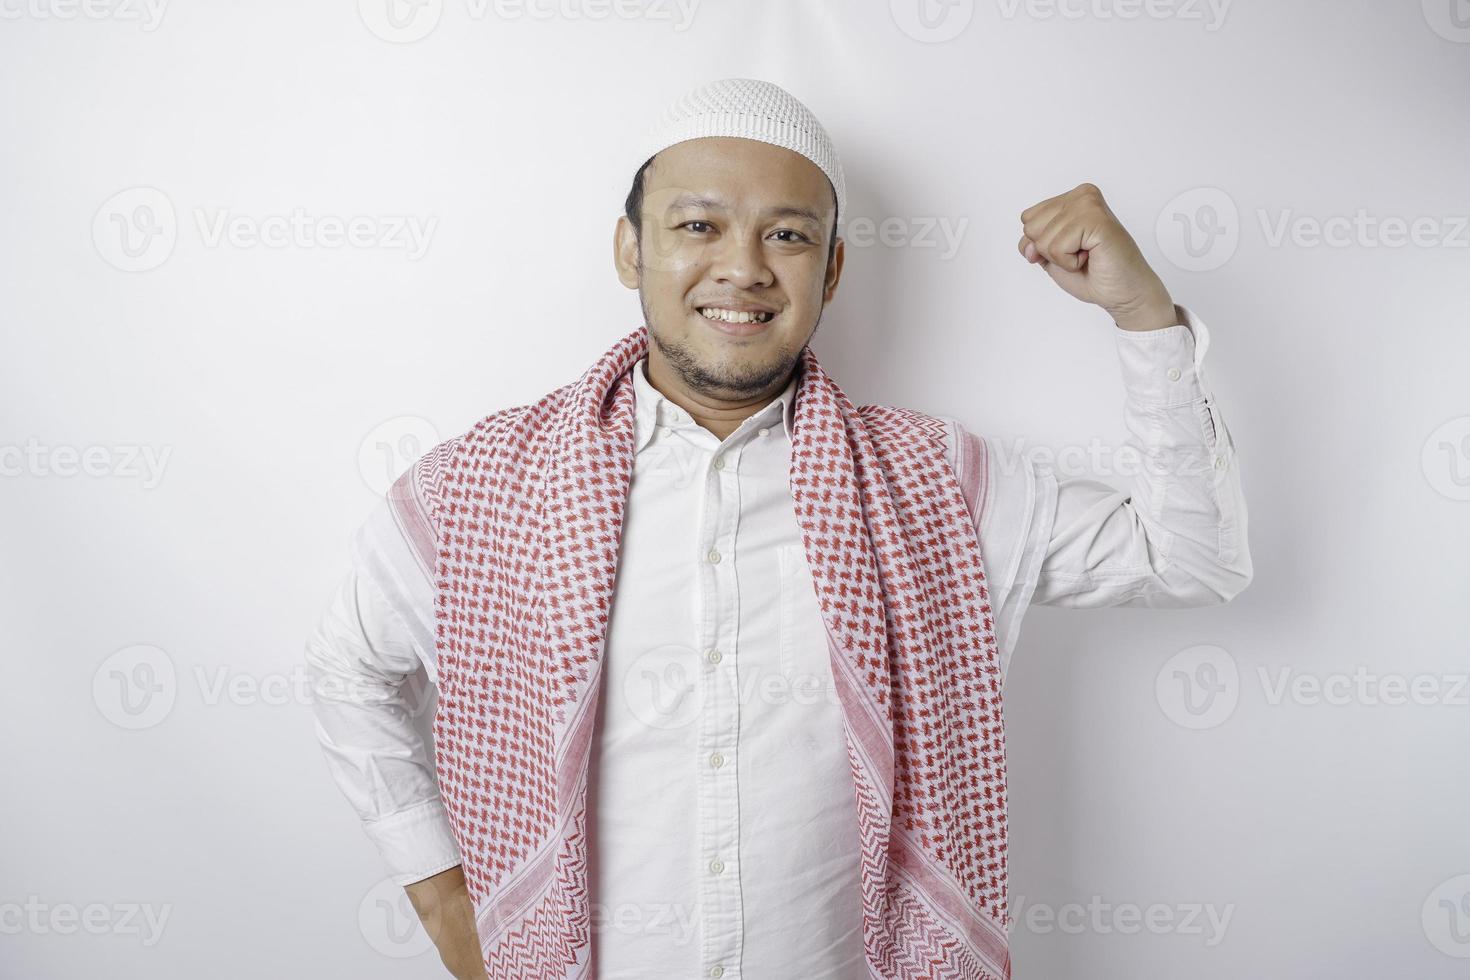 homme musulman asiatique excité montrant un geste fort en levant les bras et les muscles en souriant fièrement photo